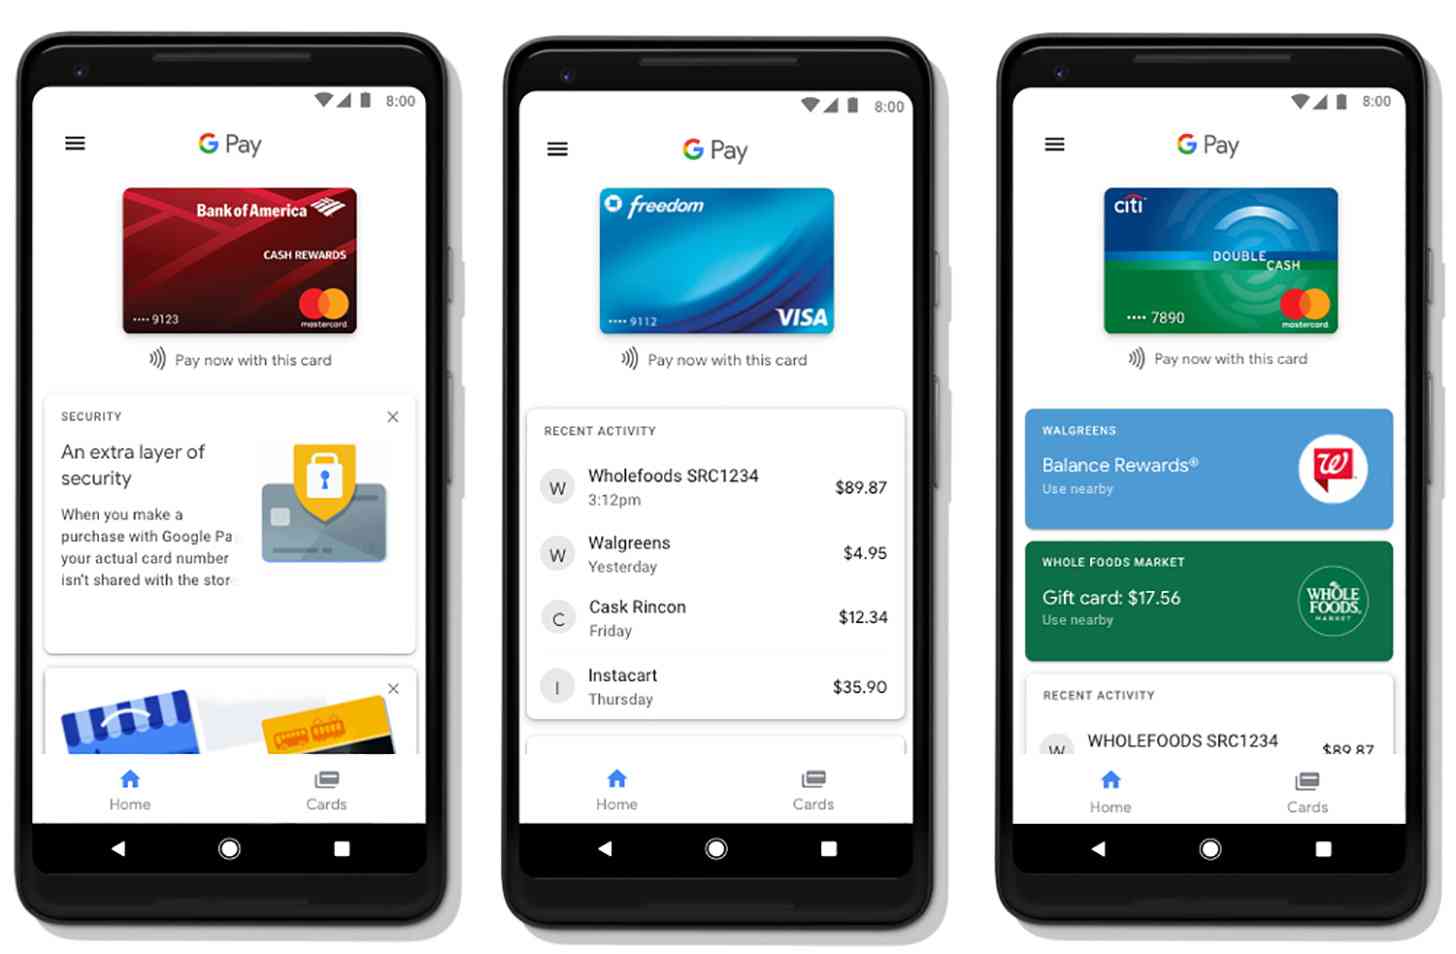 Google Pay app home